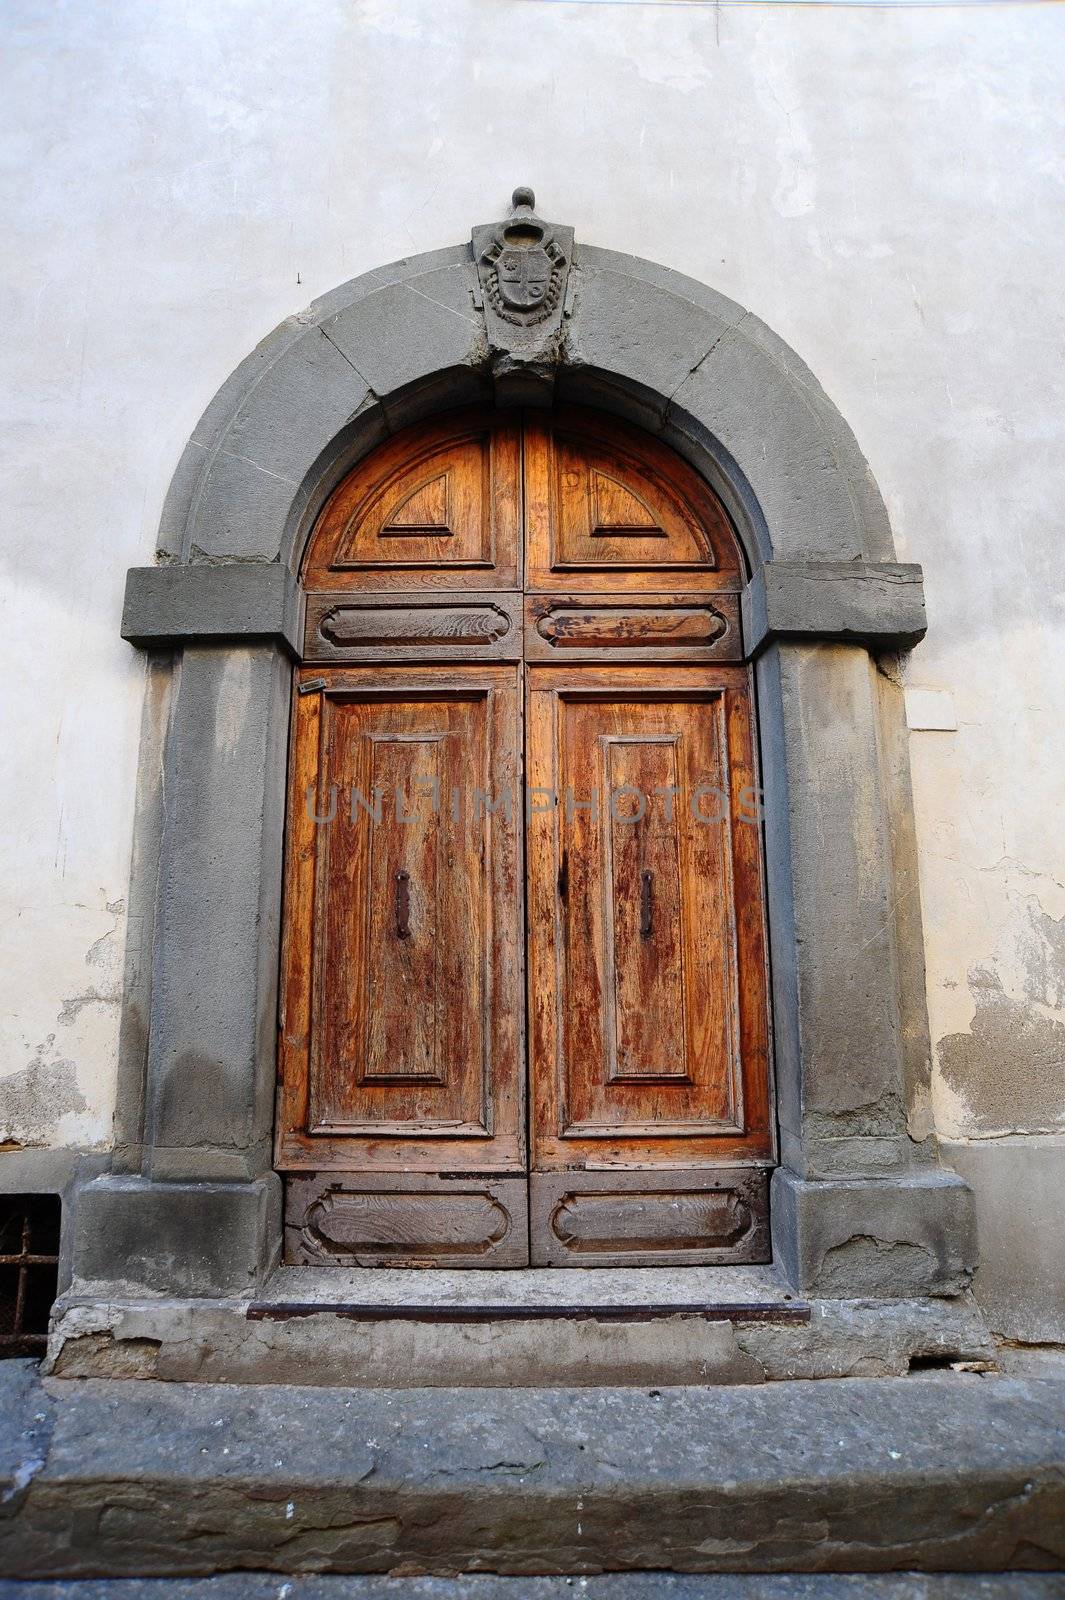 Close-up Image Of Wooden Ancient Italian Door